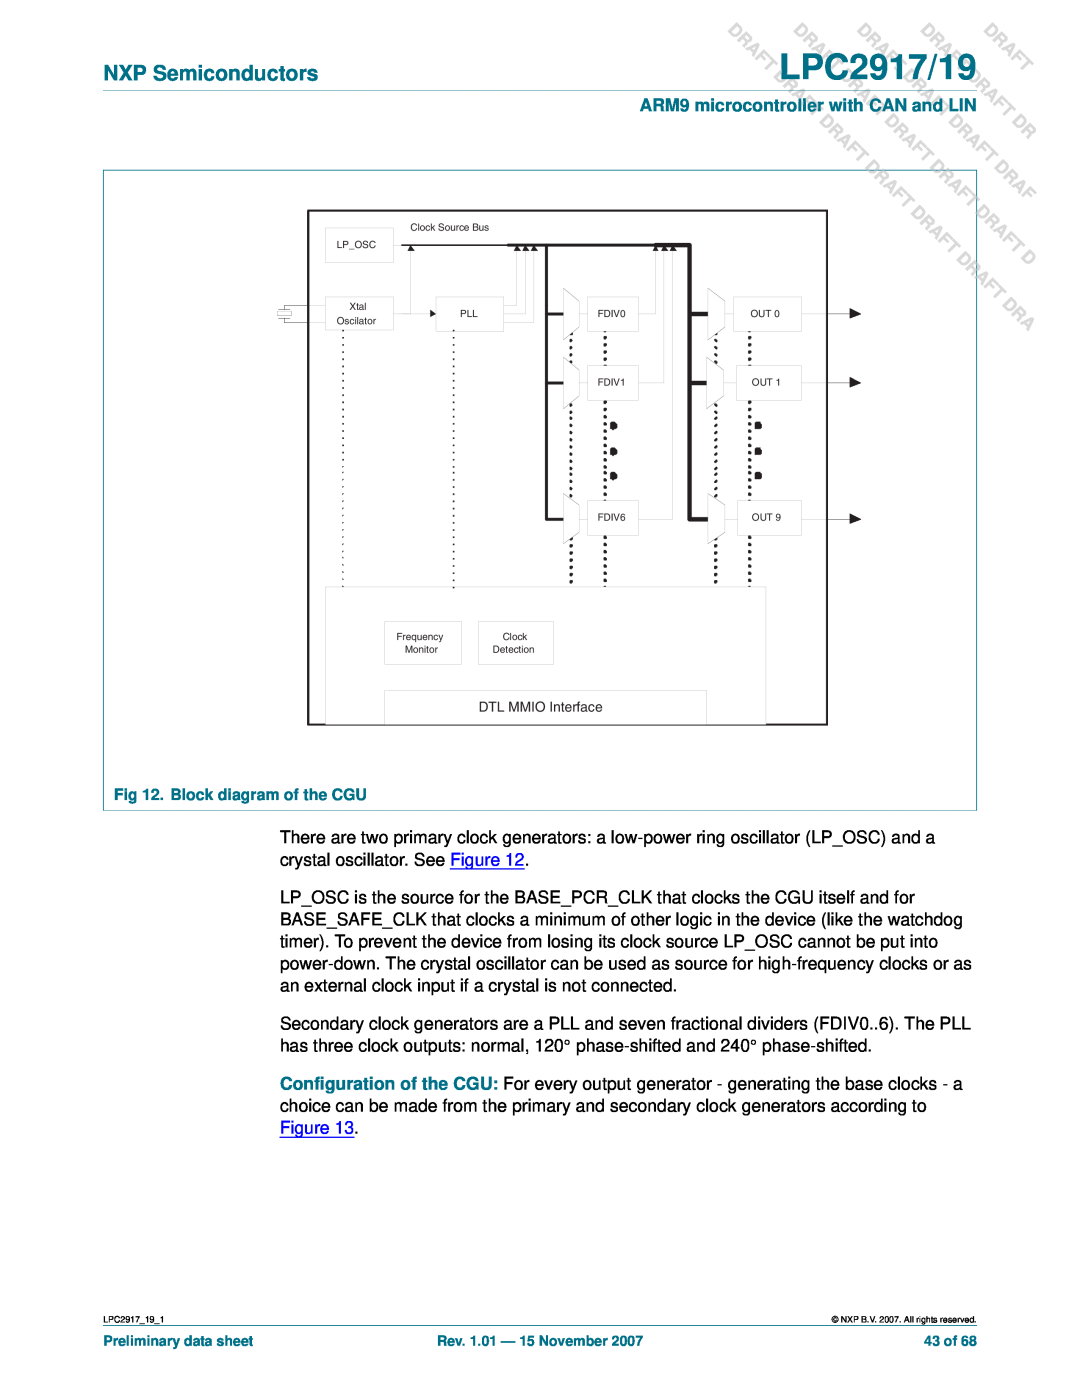 NXP Semiconductors LPC2919 user manual DLPC2917/19, Raft Aft, Dra Dr, T Draft, NXP Semiconductors, Draft Draft 